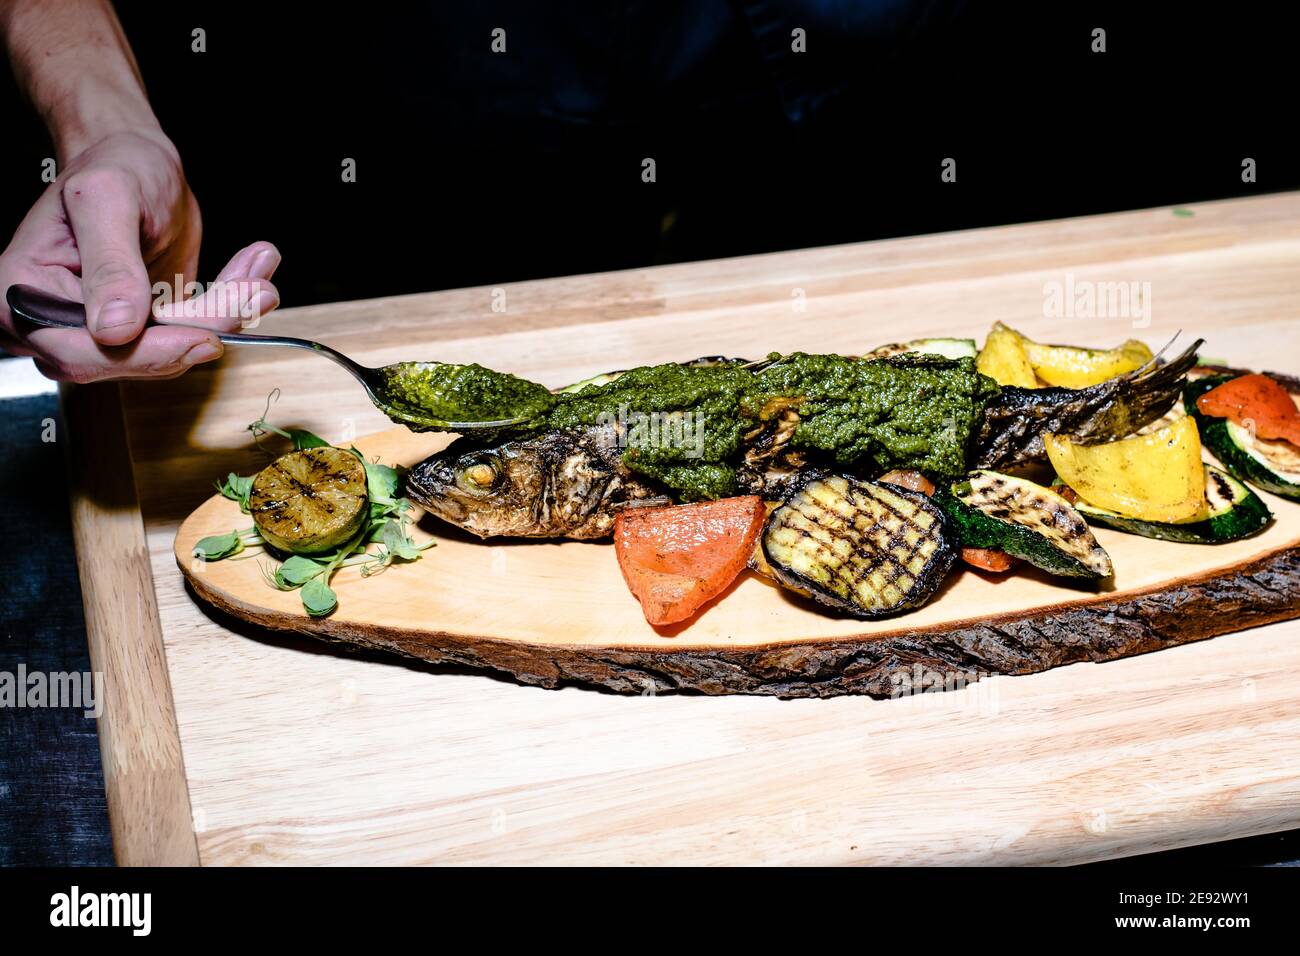 Poisson frit sur une assiette en bois dans un restaurant Banque D'Images